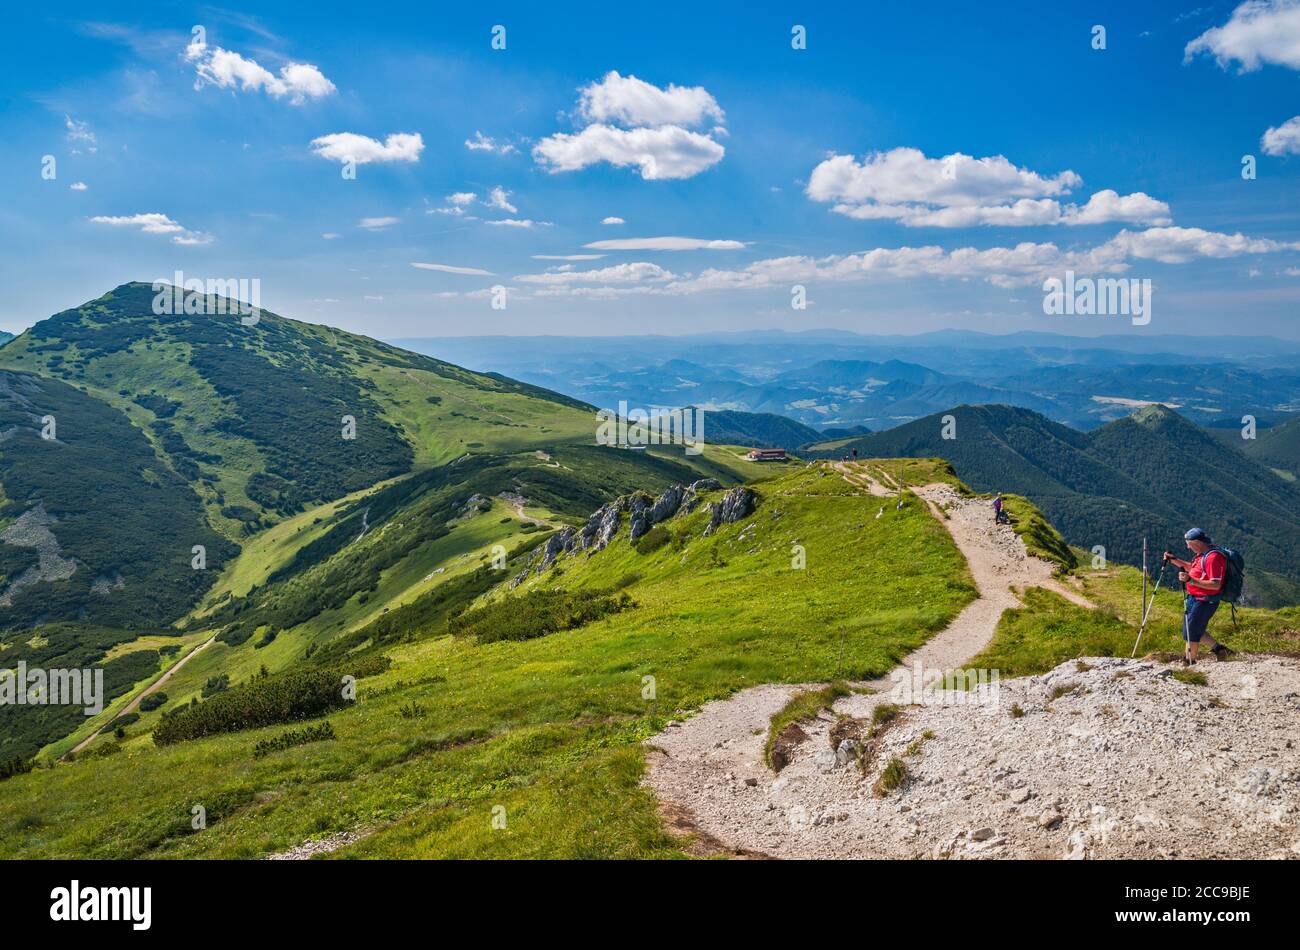 Massiccio di Velky Krivan sulla sinistra, Snilovske sedlo (passo) in centro, escursionista sulla cima del sentiero Chleb, Parco Nazionale di Mala Fatra, Regione Zilina, Slovacchia Foto Stock